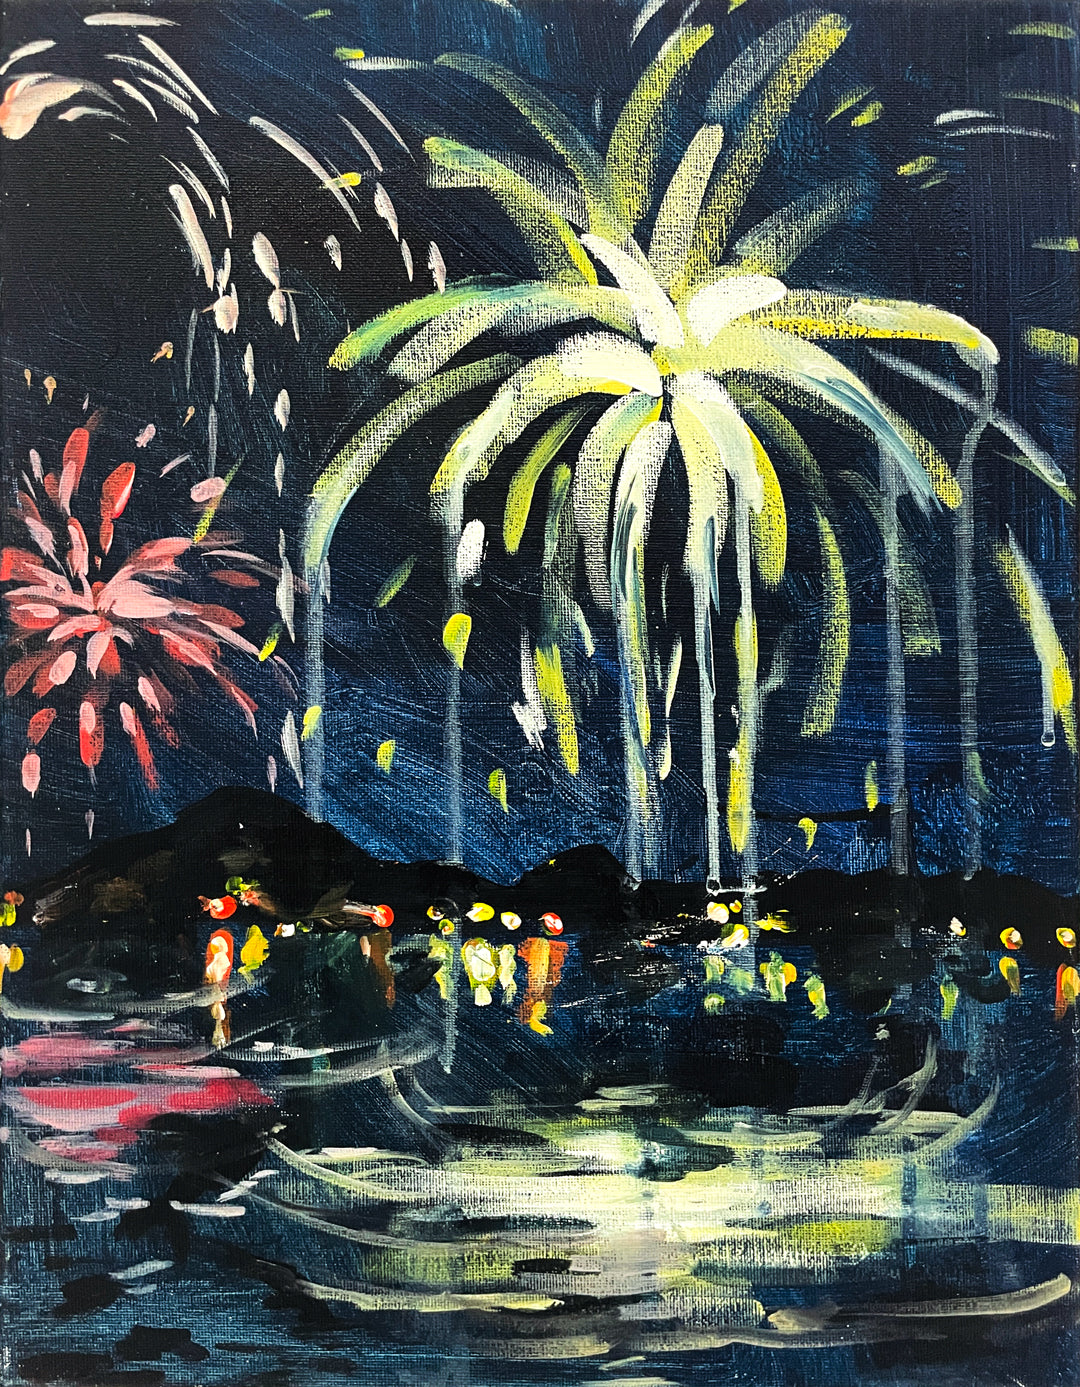 06月30日 (日) 15:00-18:00 | ノーガホテル上野東京 | オリジナル | 花火ペインティング (Original Fireworks Painting at Nohga Hotel Ueno Tokyo)